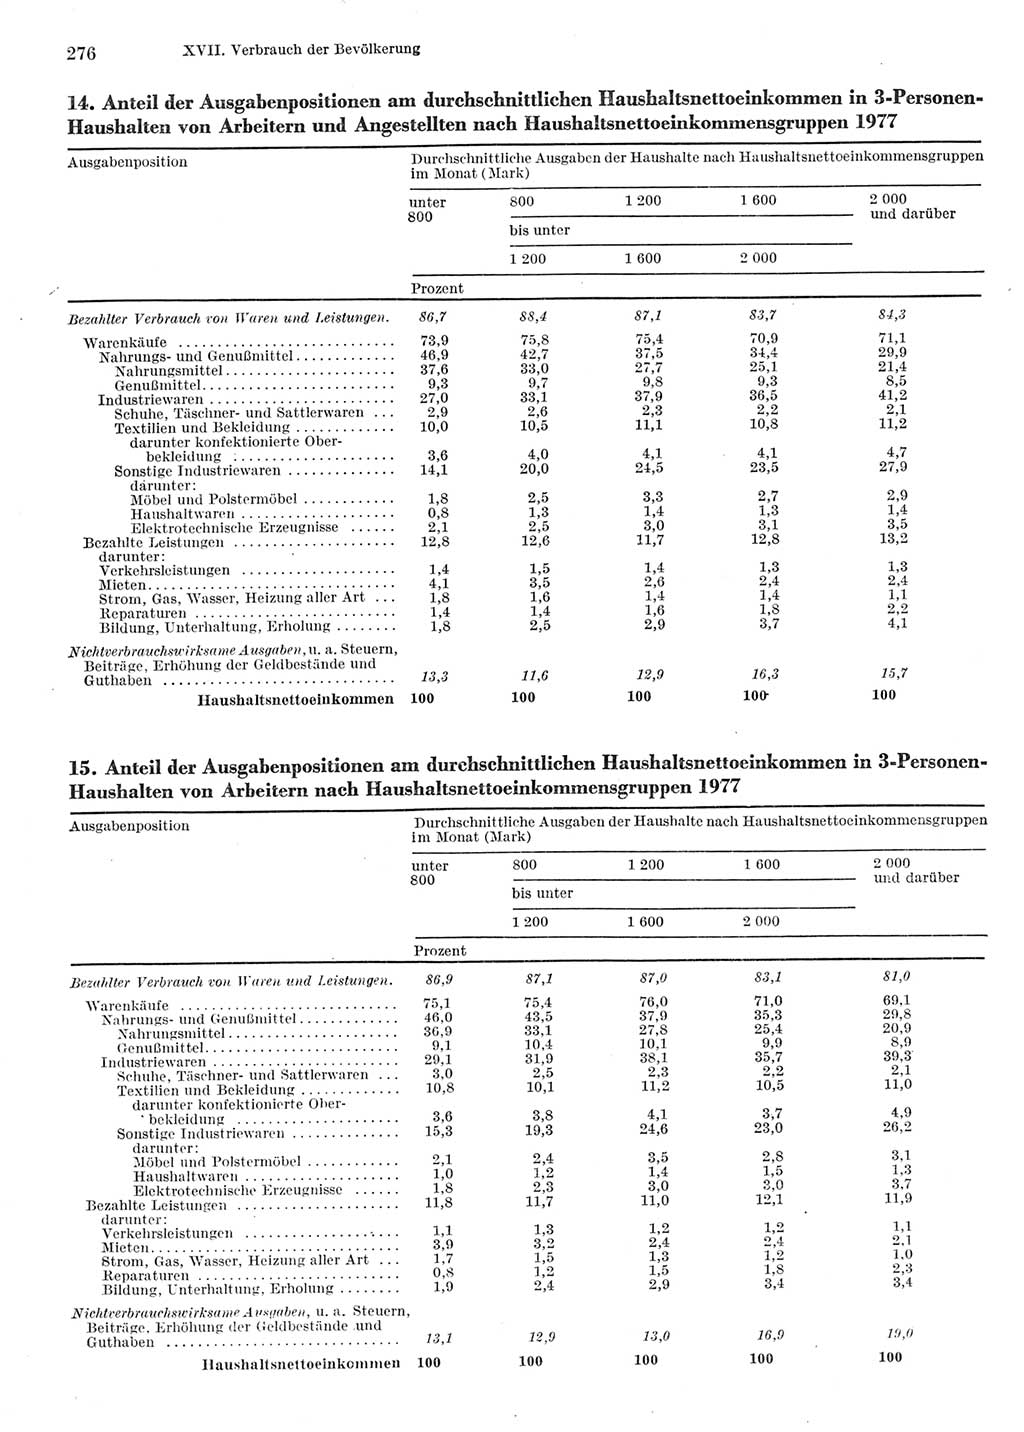 Statistisches Jahrbuch der Deutschen Demokratischen Republik (DDR) 1978, Seite 276 (Stat. Jb. DDR 1978, S. 276)